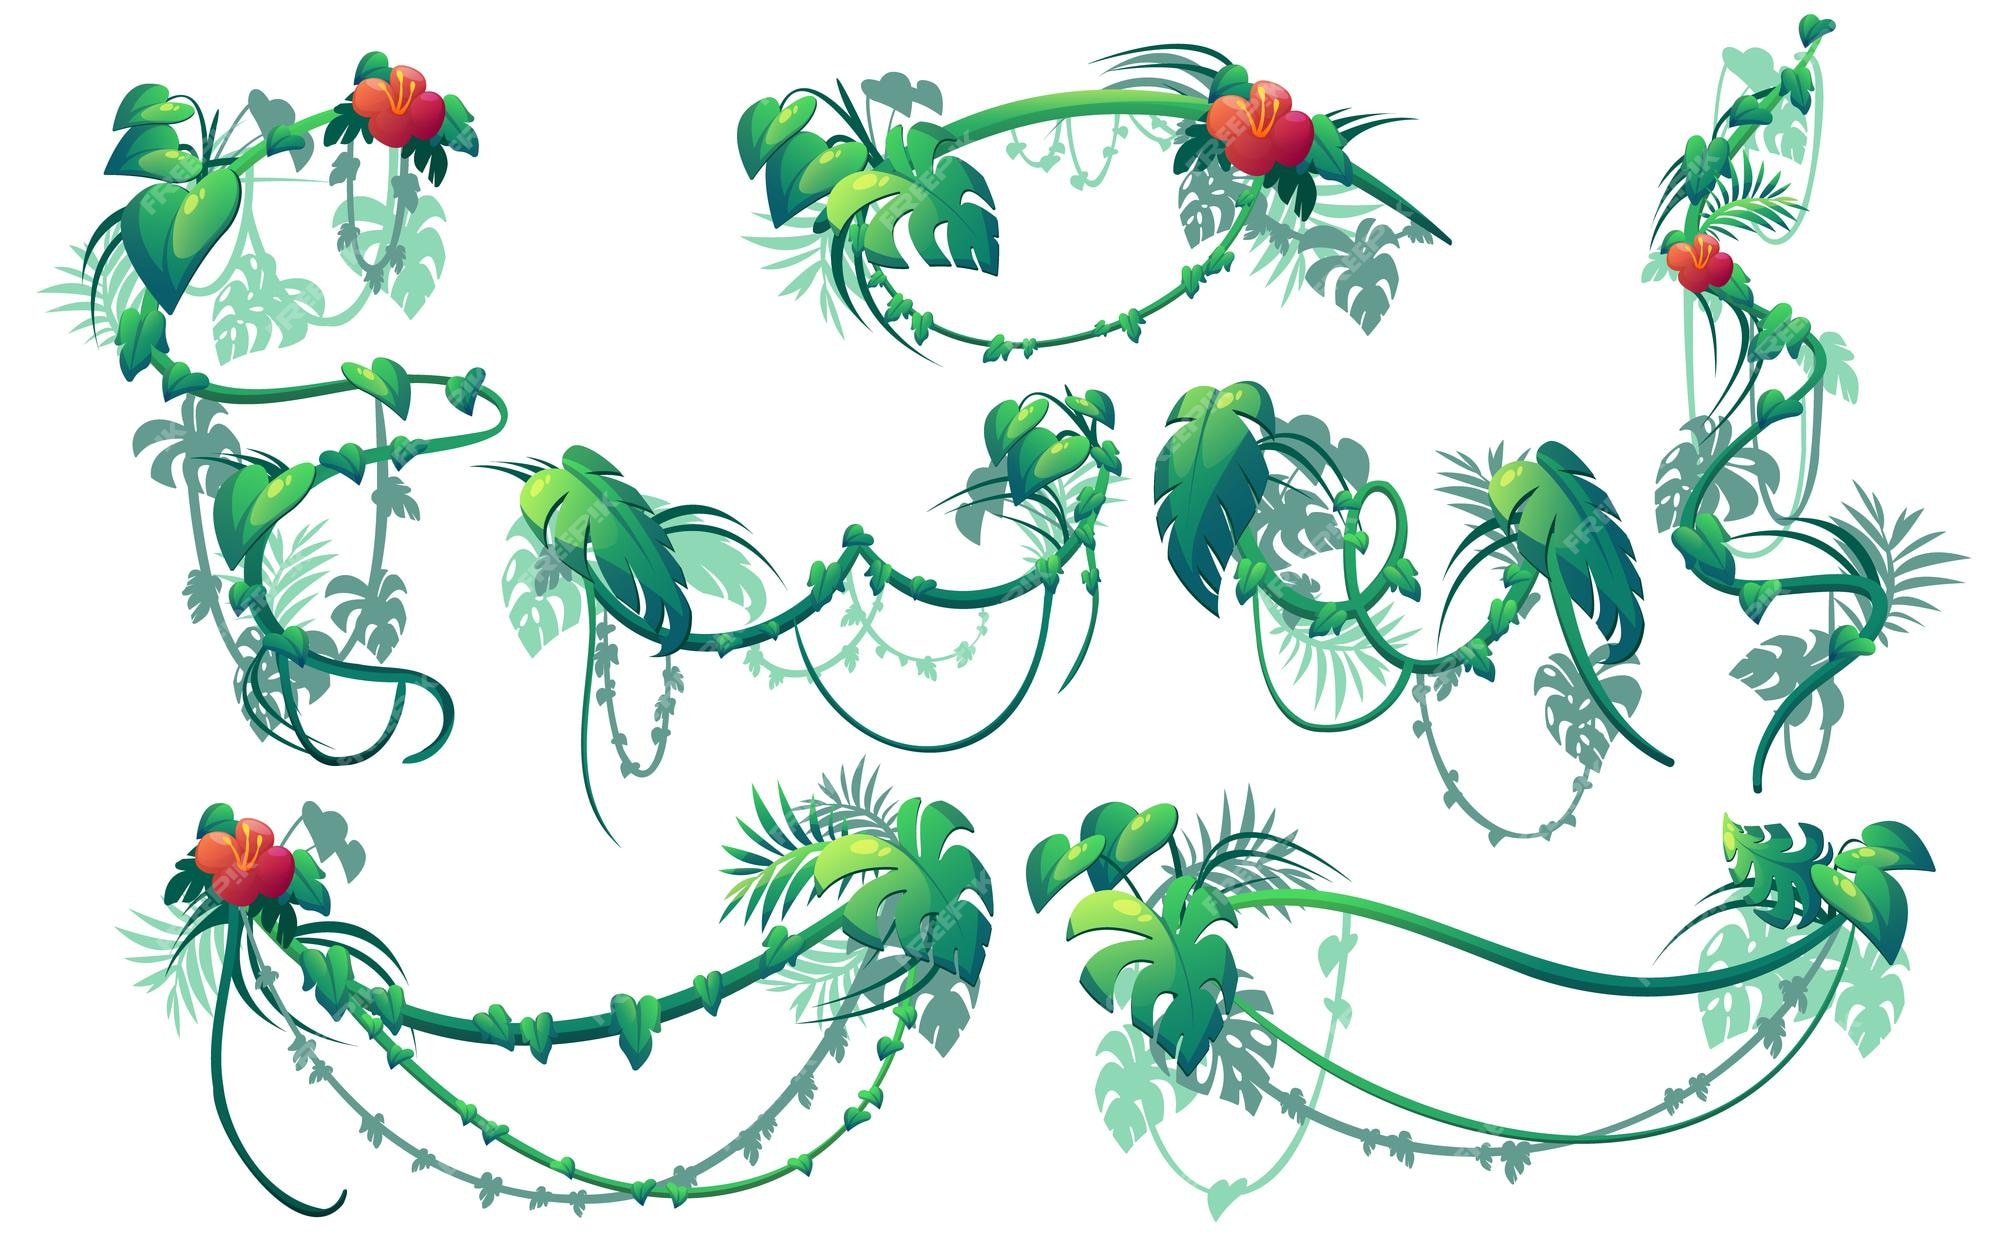 Enredadera de la selva plantas lianas con hojas verdes y flores rojas  conjunto de dibujos animados vectoriales de bordes de enredaderas de hiedra  trepadora ramas florales colgantes rizadas aisladas sobre fondo blanco |